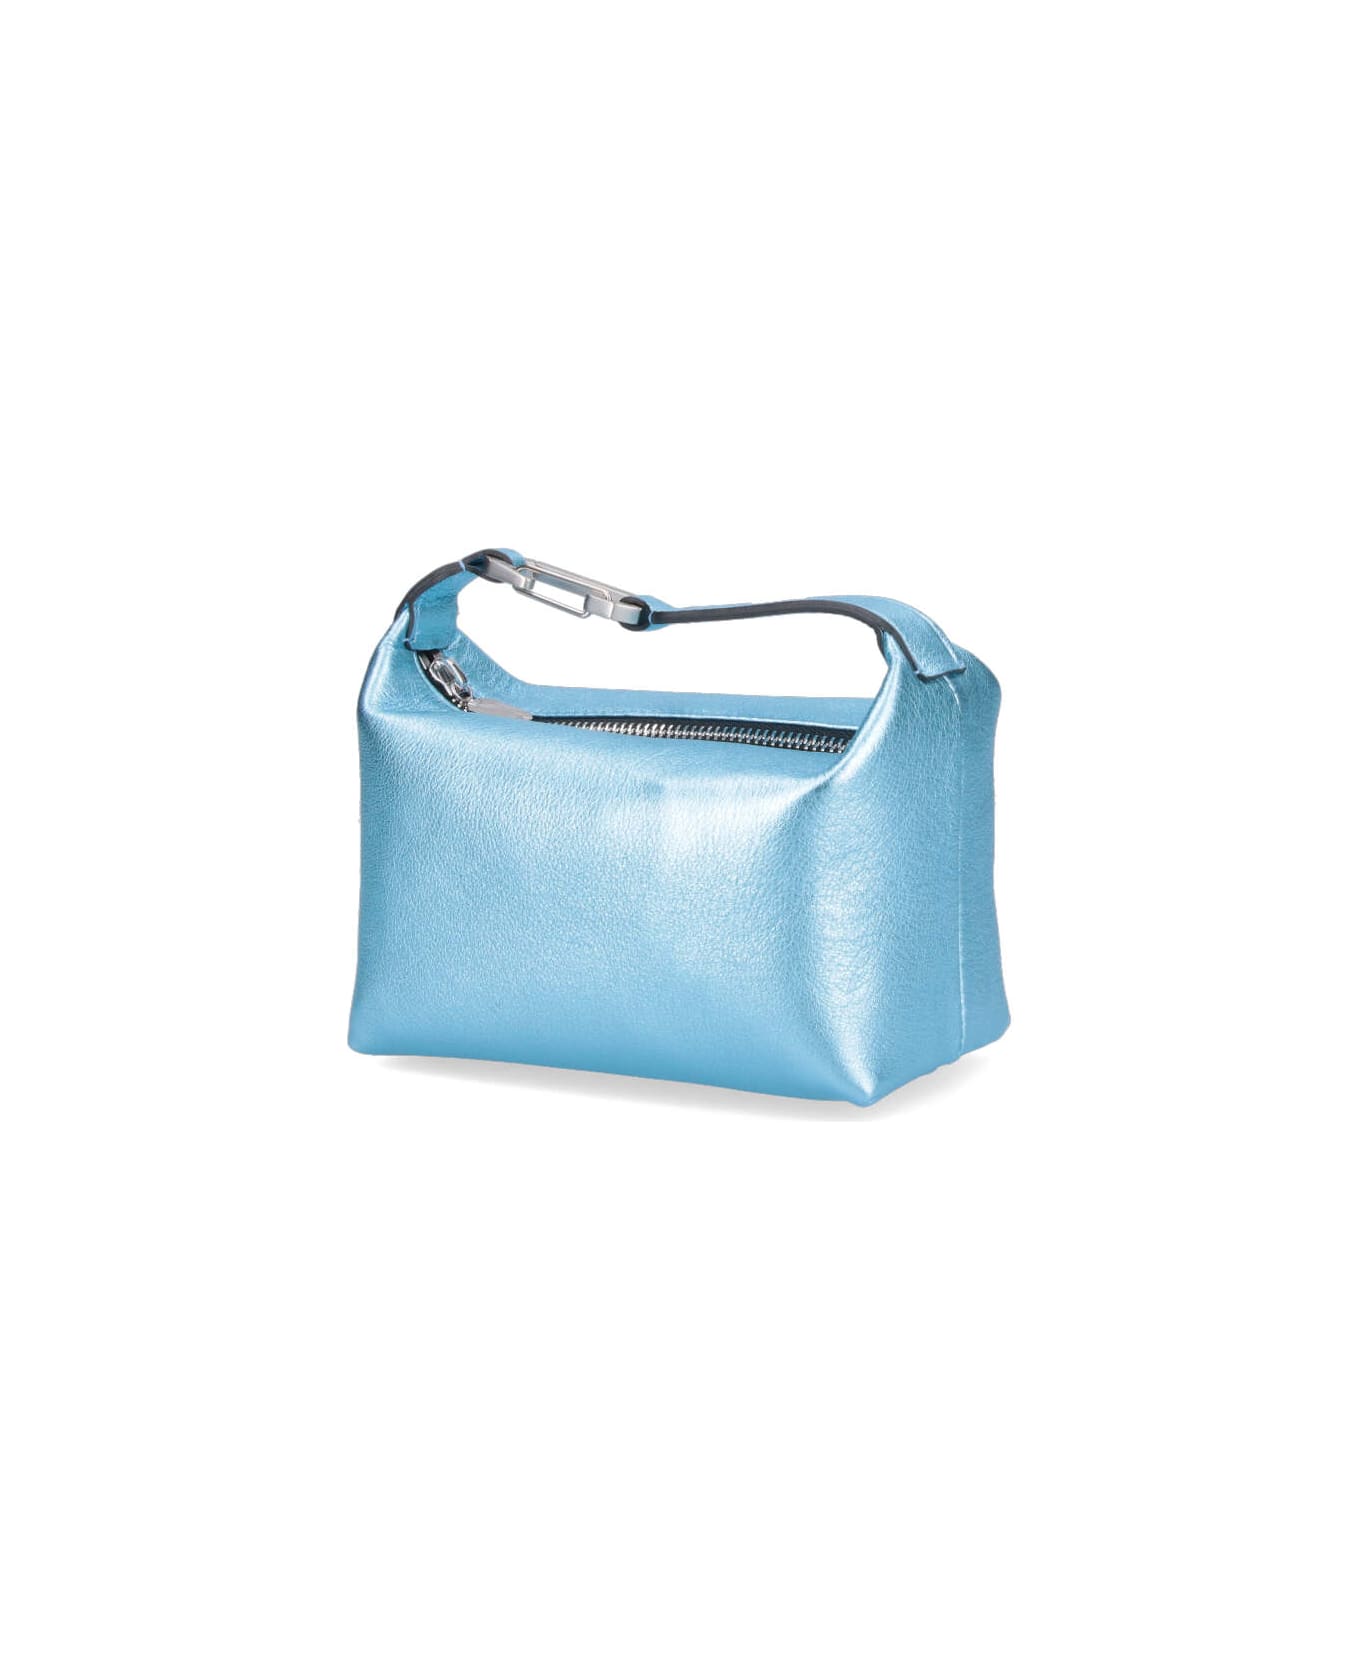 EÉRA "moon" Handbag - Light Blue